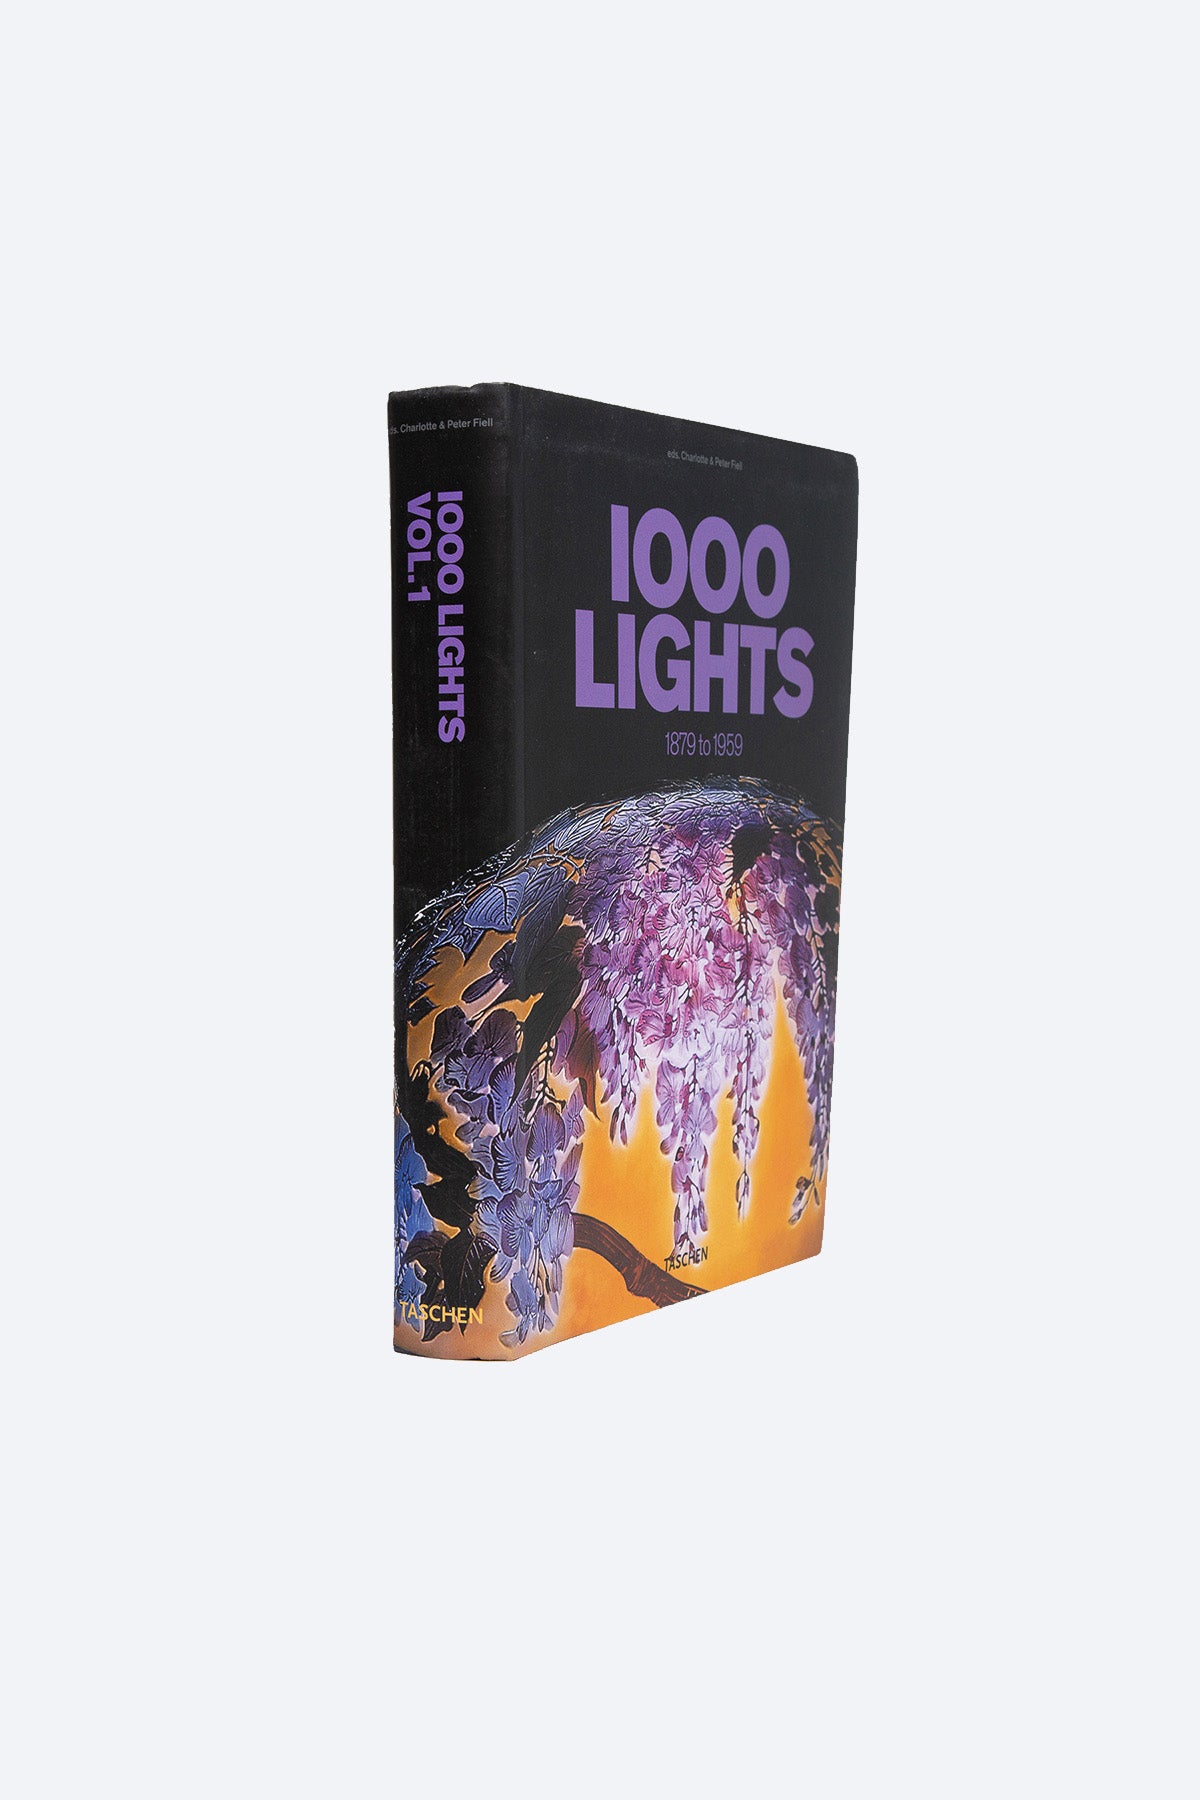 TASCHEN | 1000 LIGHTS 1879-1959